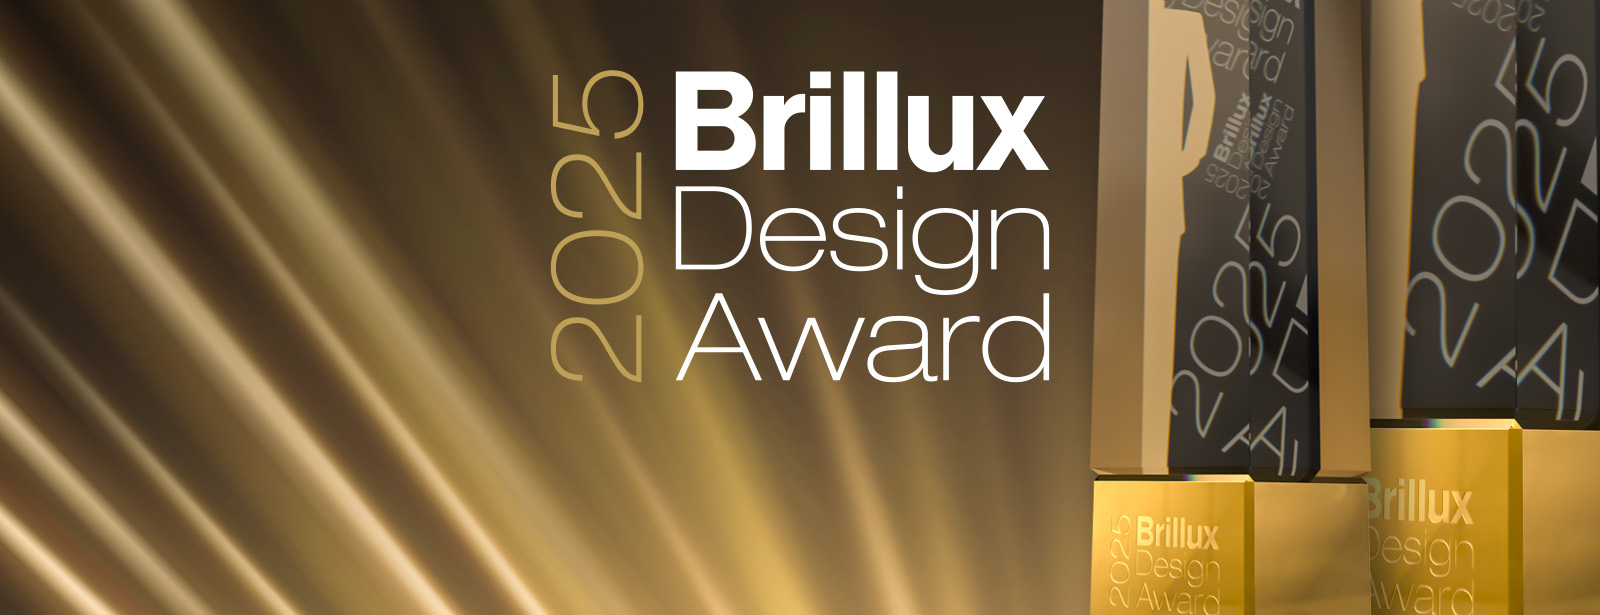 Brillux Design Award: pronti a partecipare?